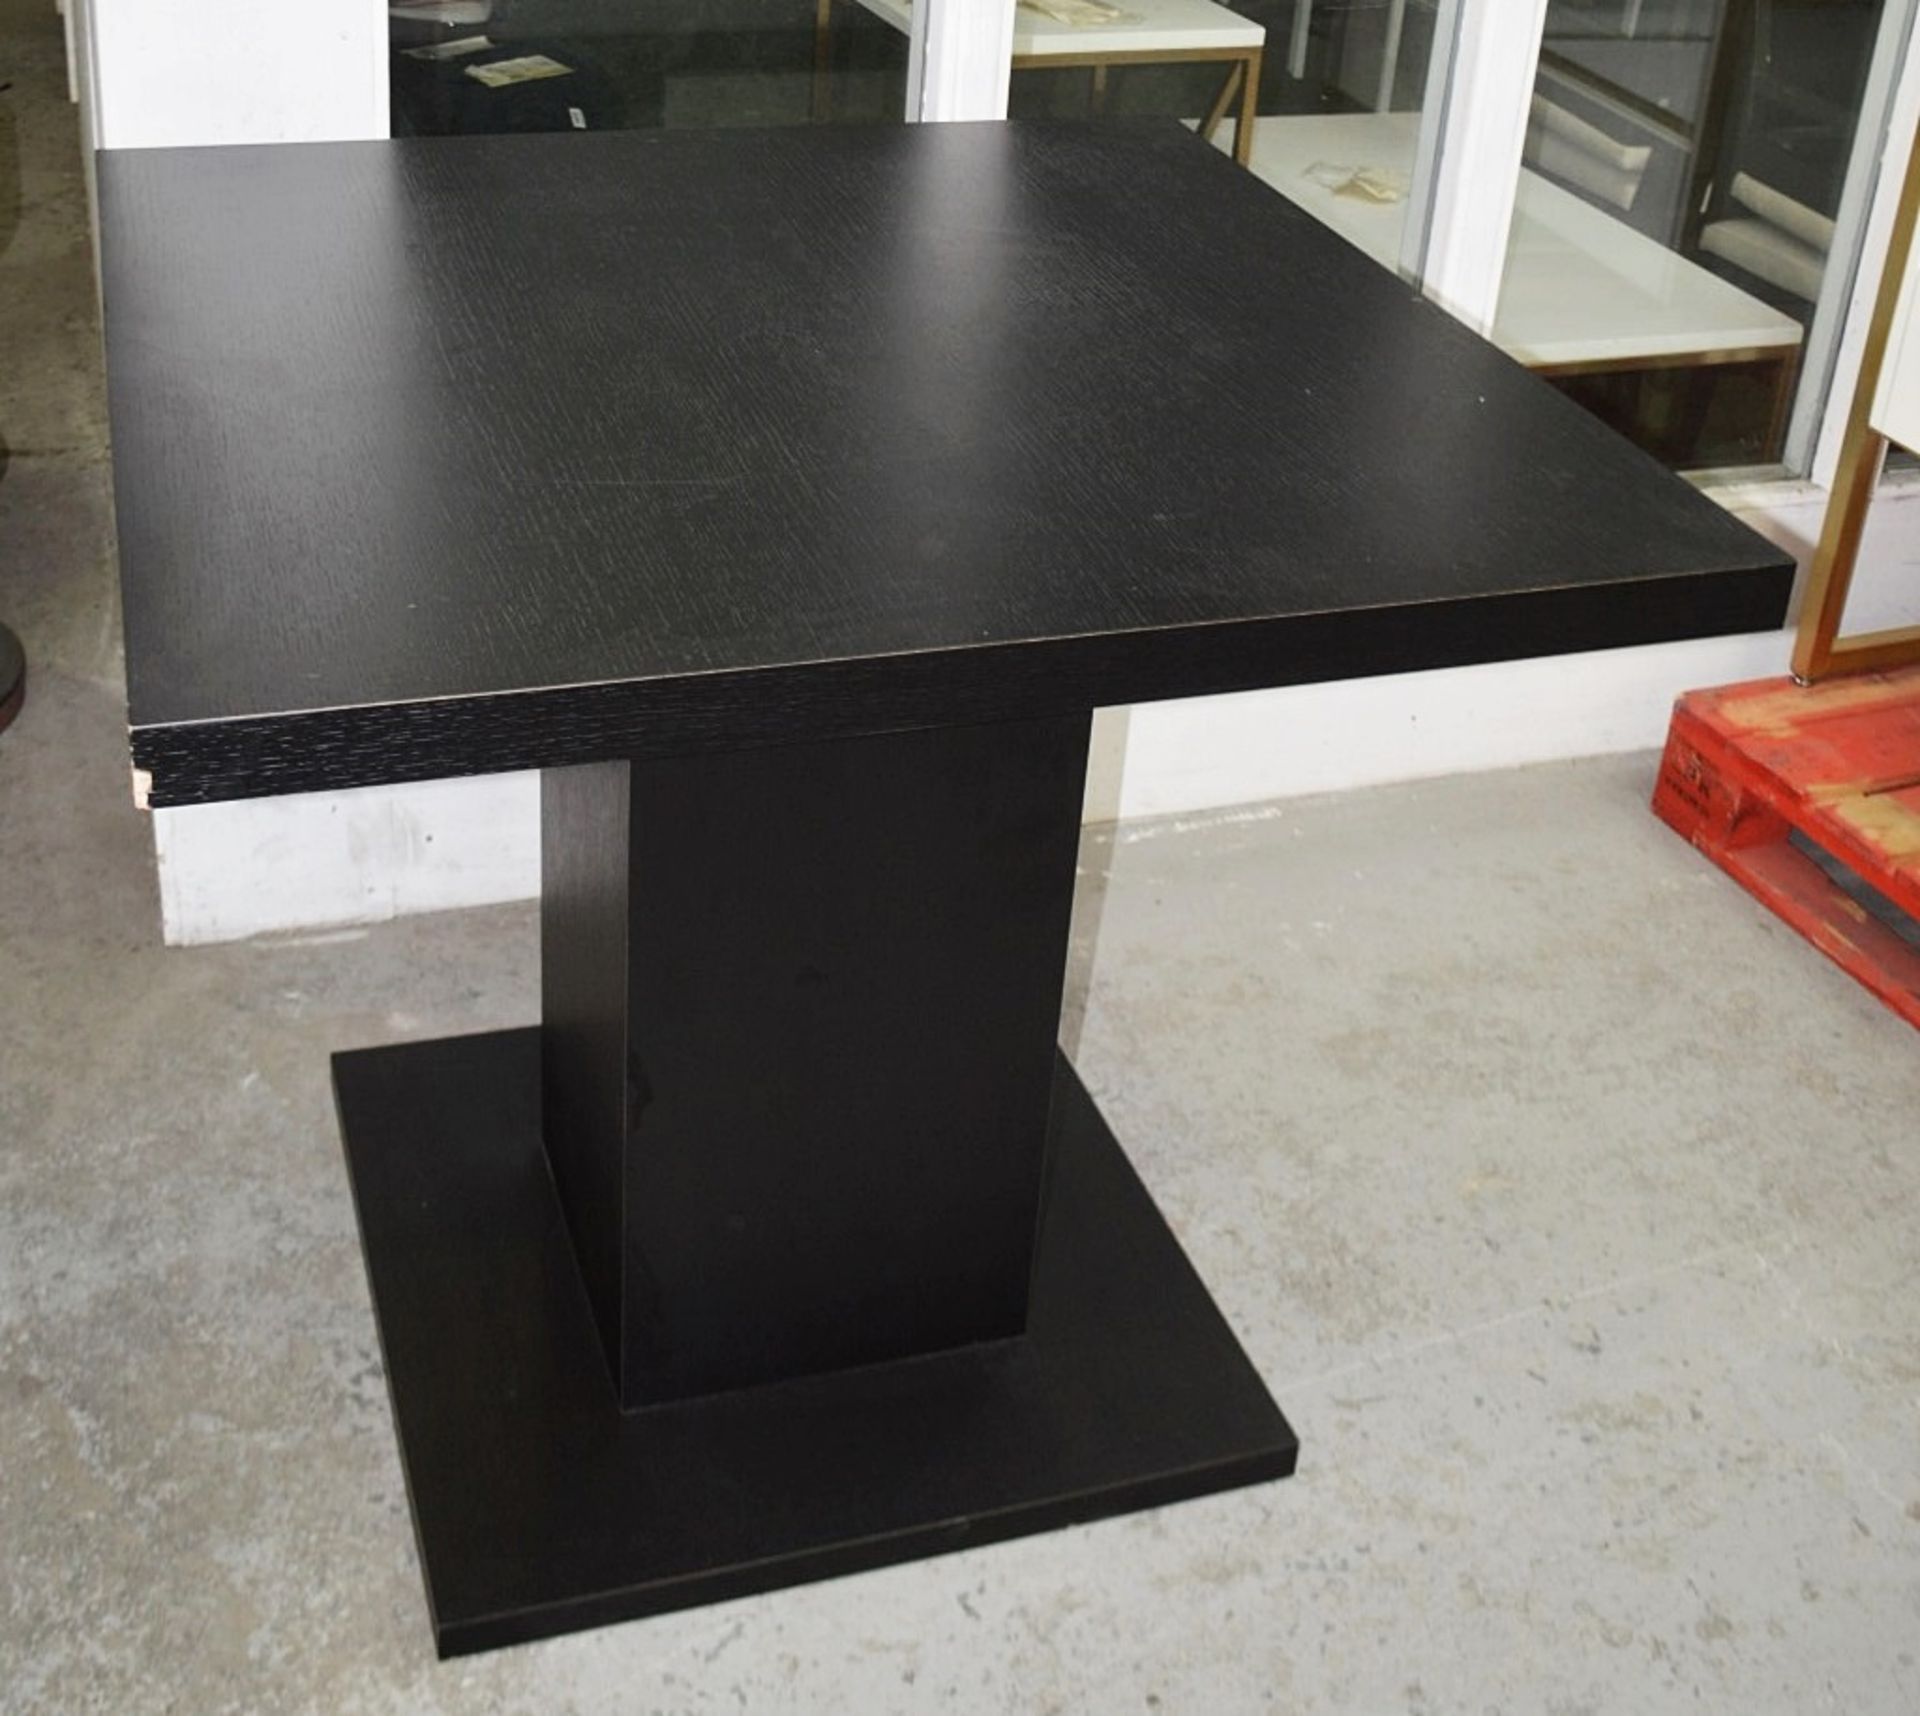 1 x Large Square Dining / Meeting Table In A Dark Wood Veneer - Ex-Showroom Piece - Ref: HAR122